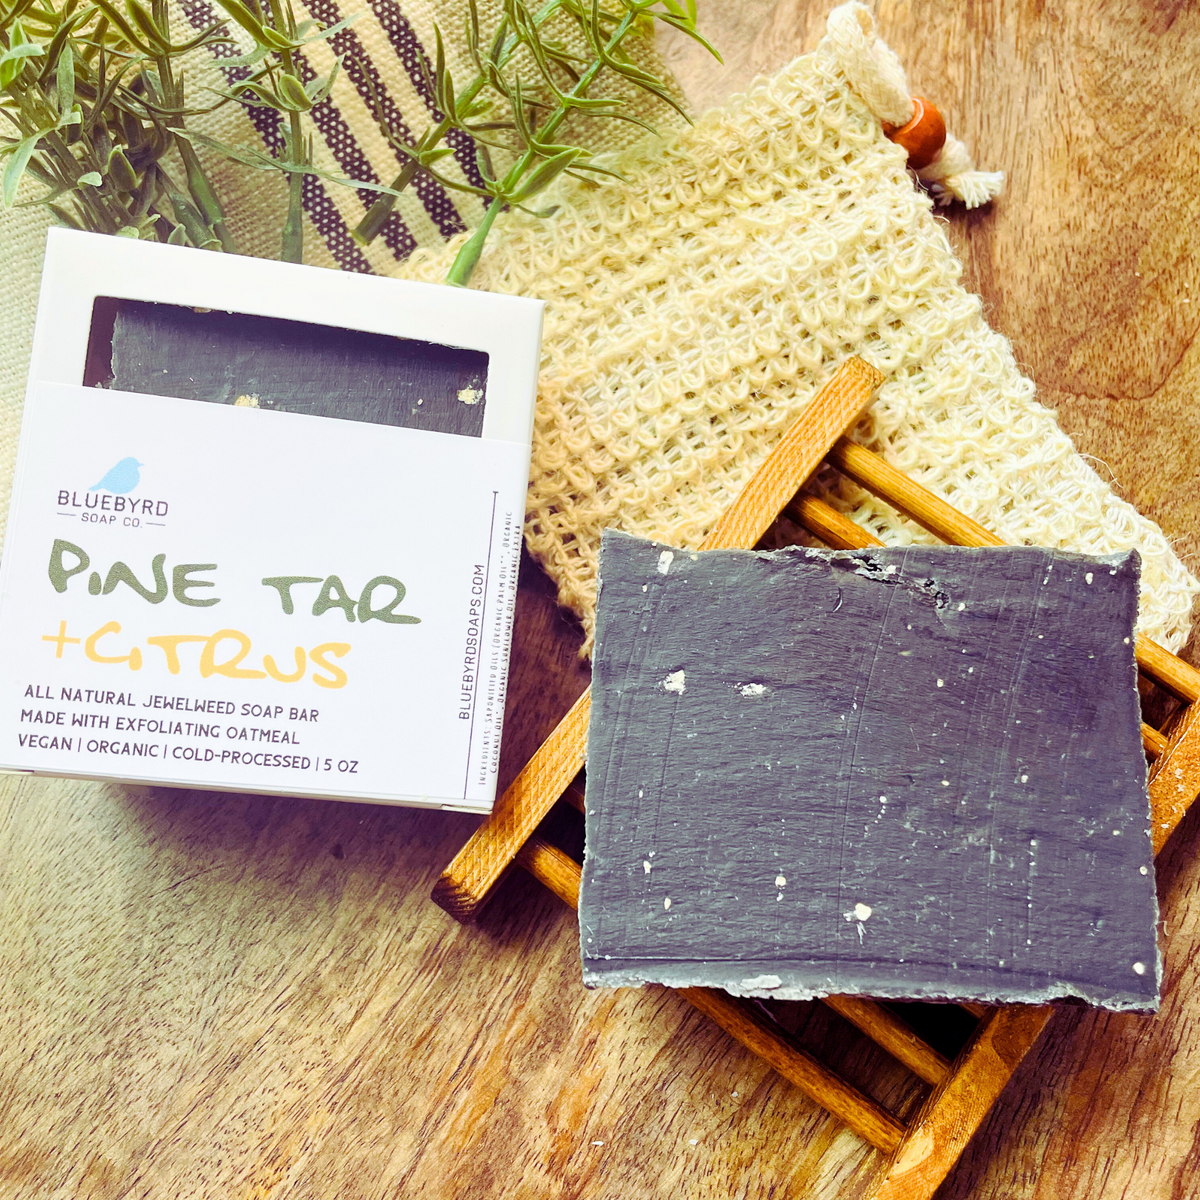 Pine Tar Soap Artisan Handmade Soap Handmade Bar Soap Soap for Men